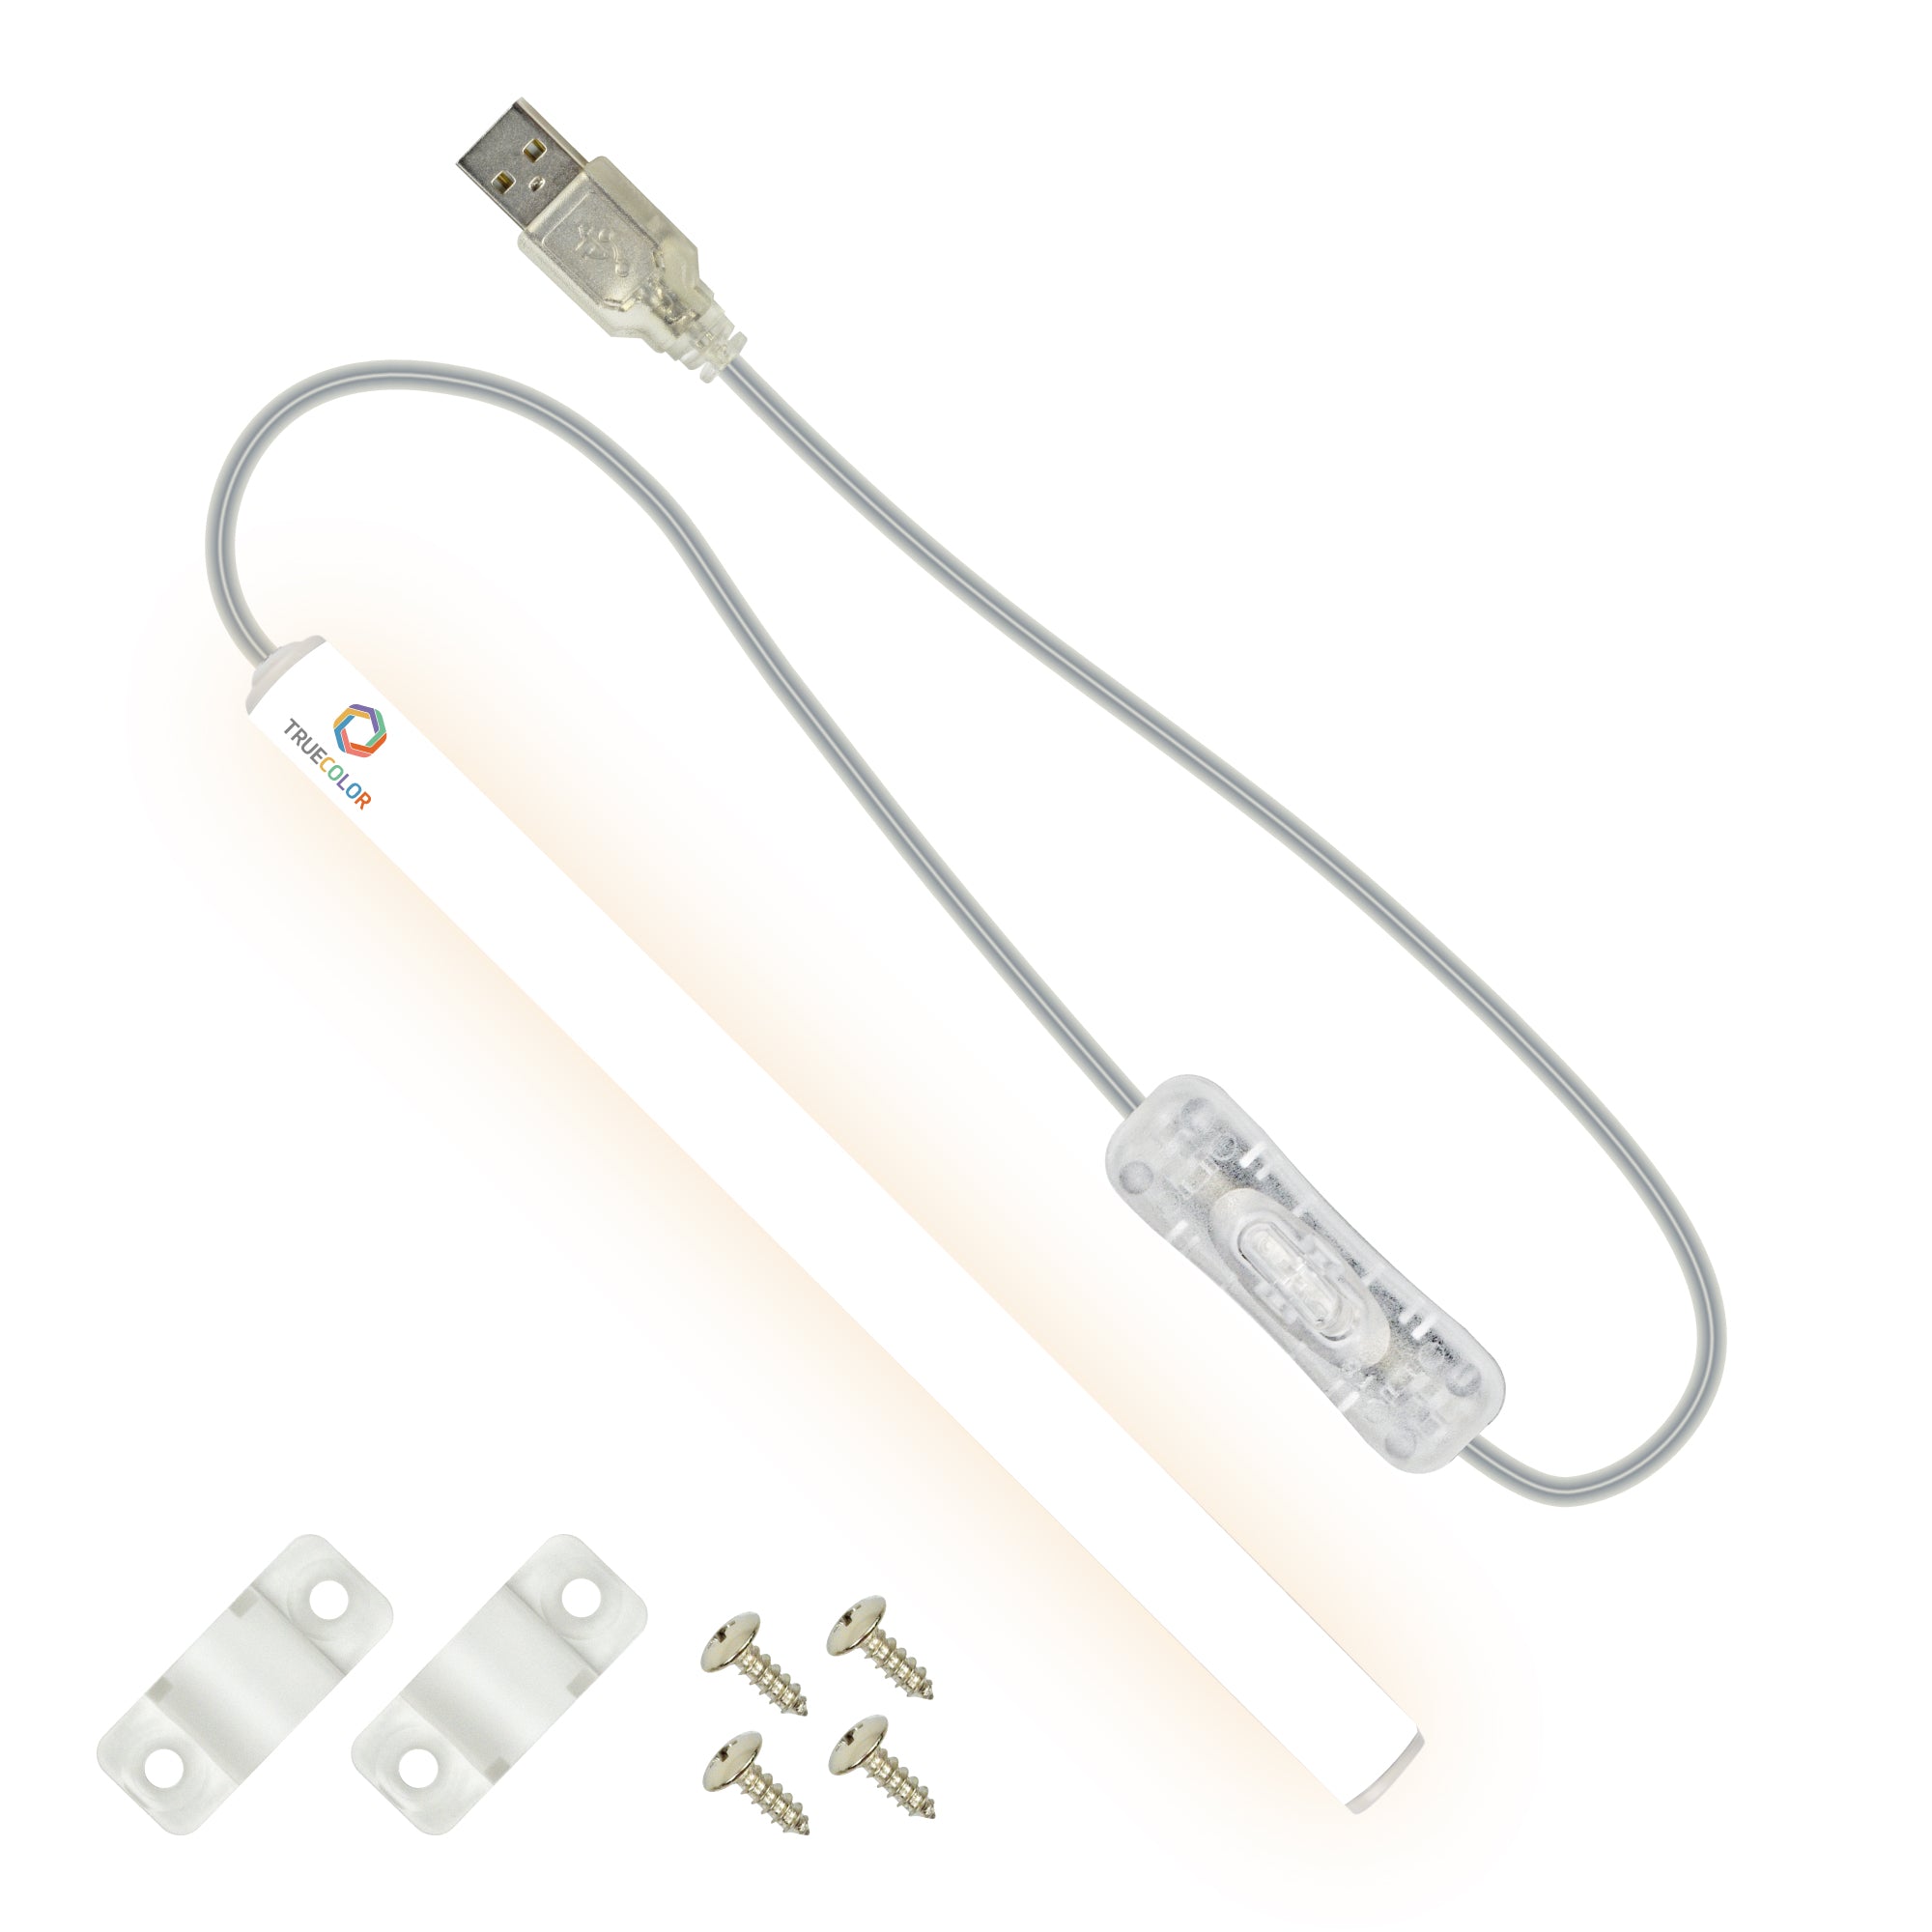 09 Watt USB Bulb for Power Bank, USB led Light for Power Bank, USB